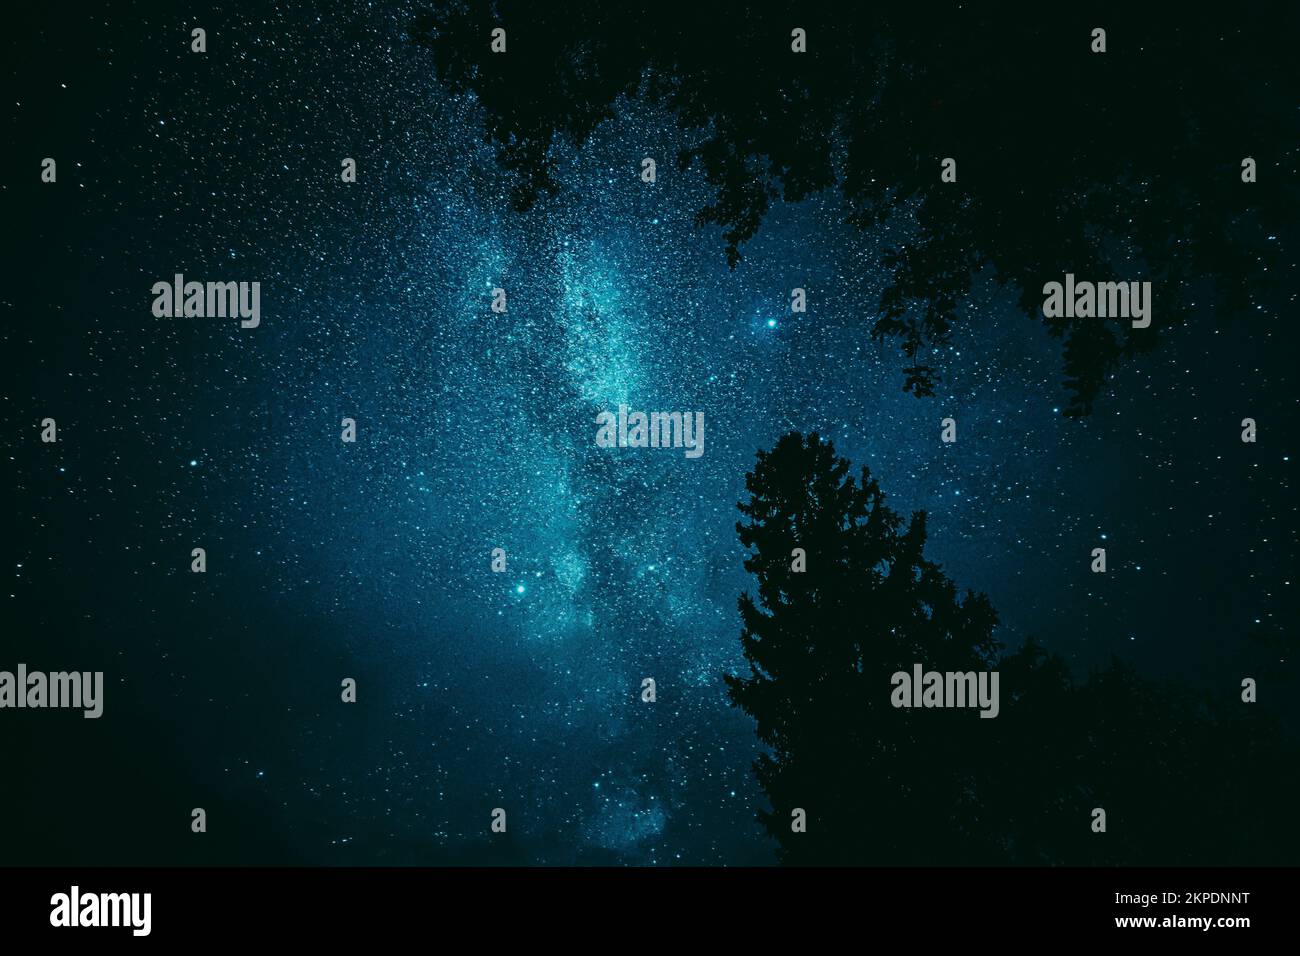 Ciel étoilé étoiles au-dessus des couronnes noires sombres de pins Bois Silhouettes. Ciel Starry naturel au-dessus des bois. Paysage de nuit avec bleu foncé Banque D'Images